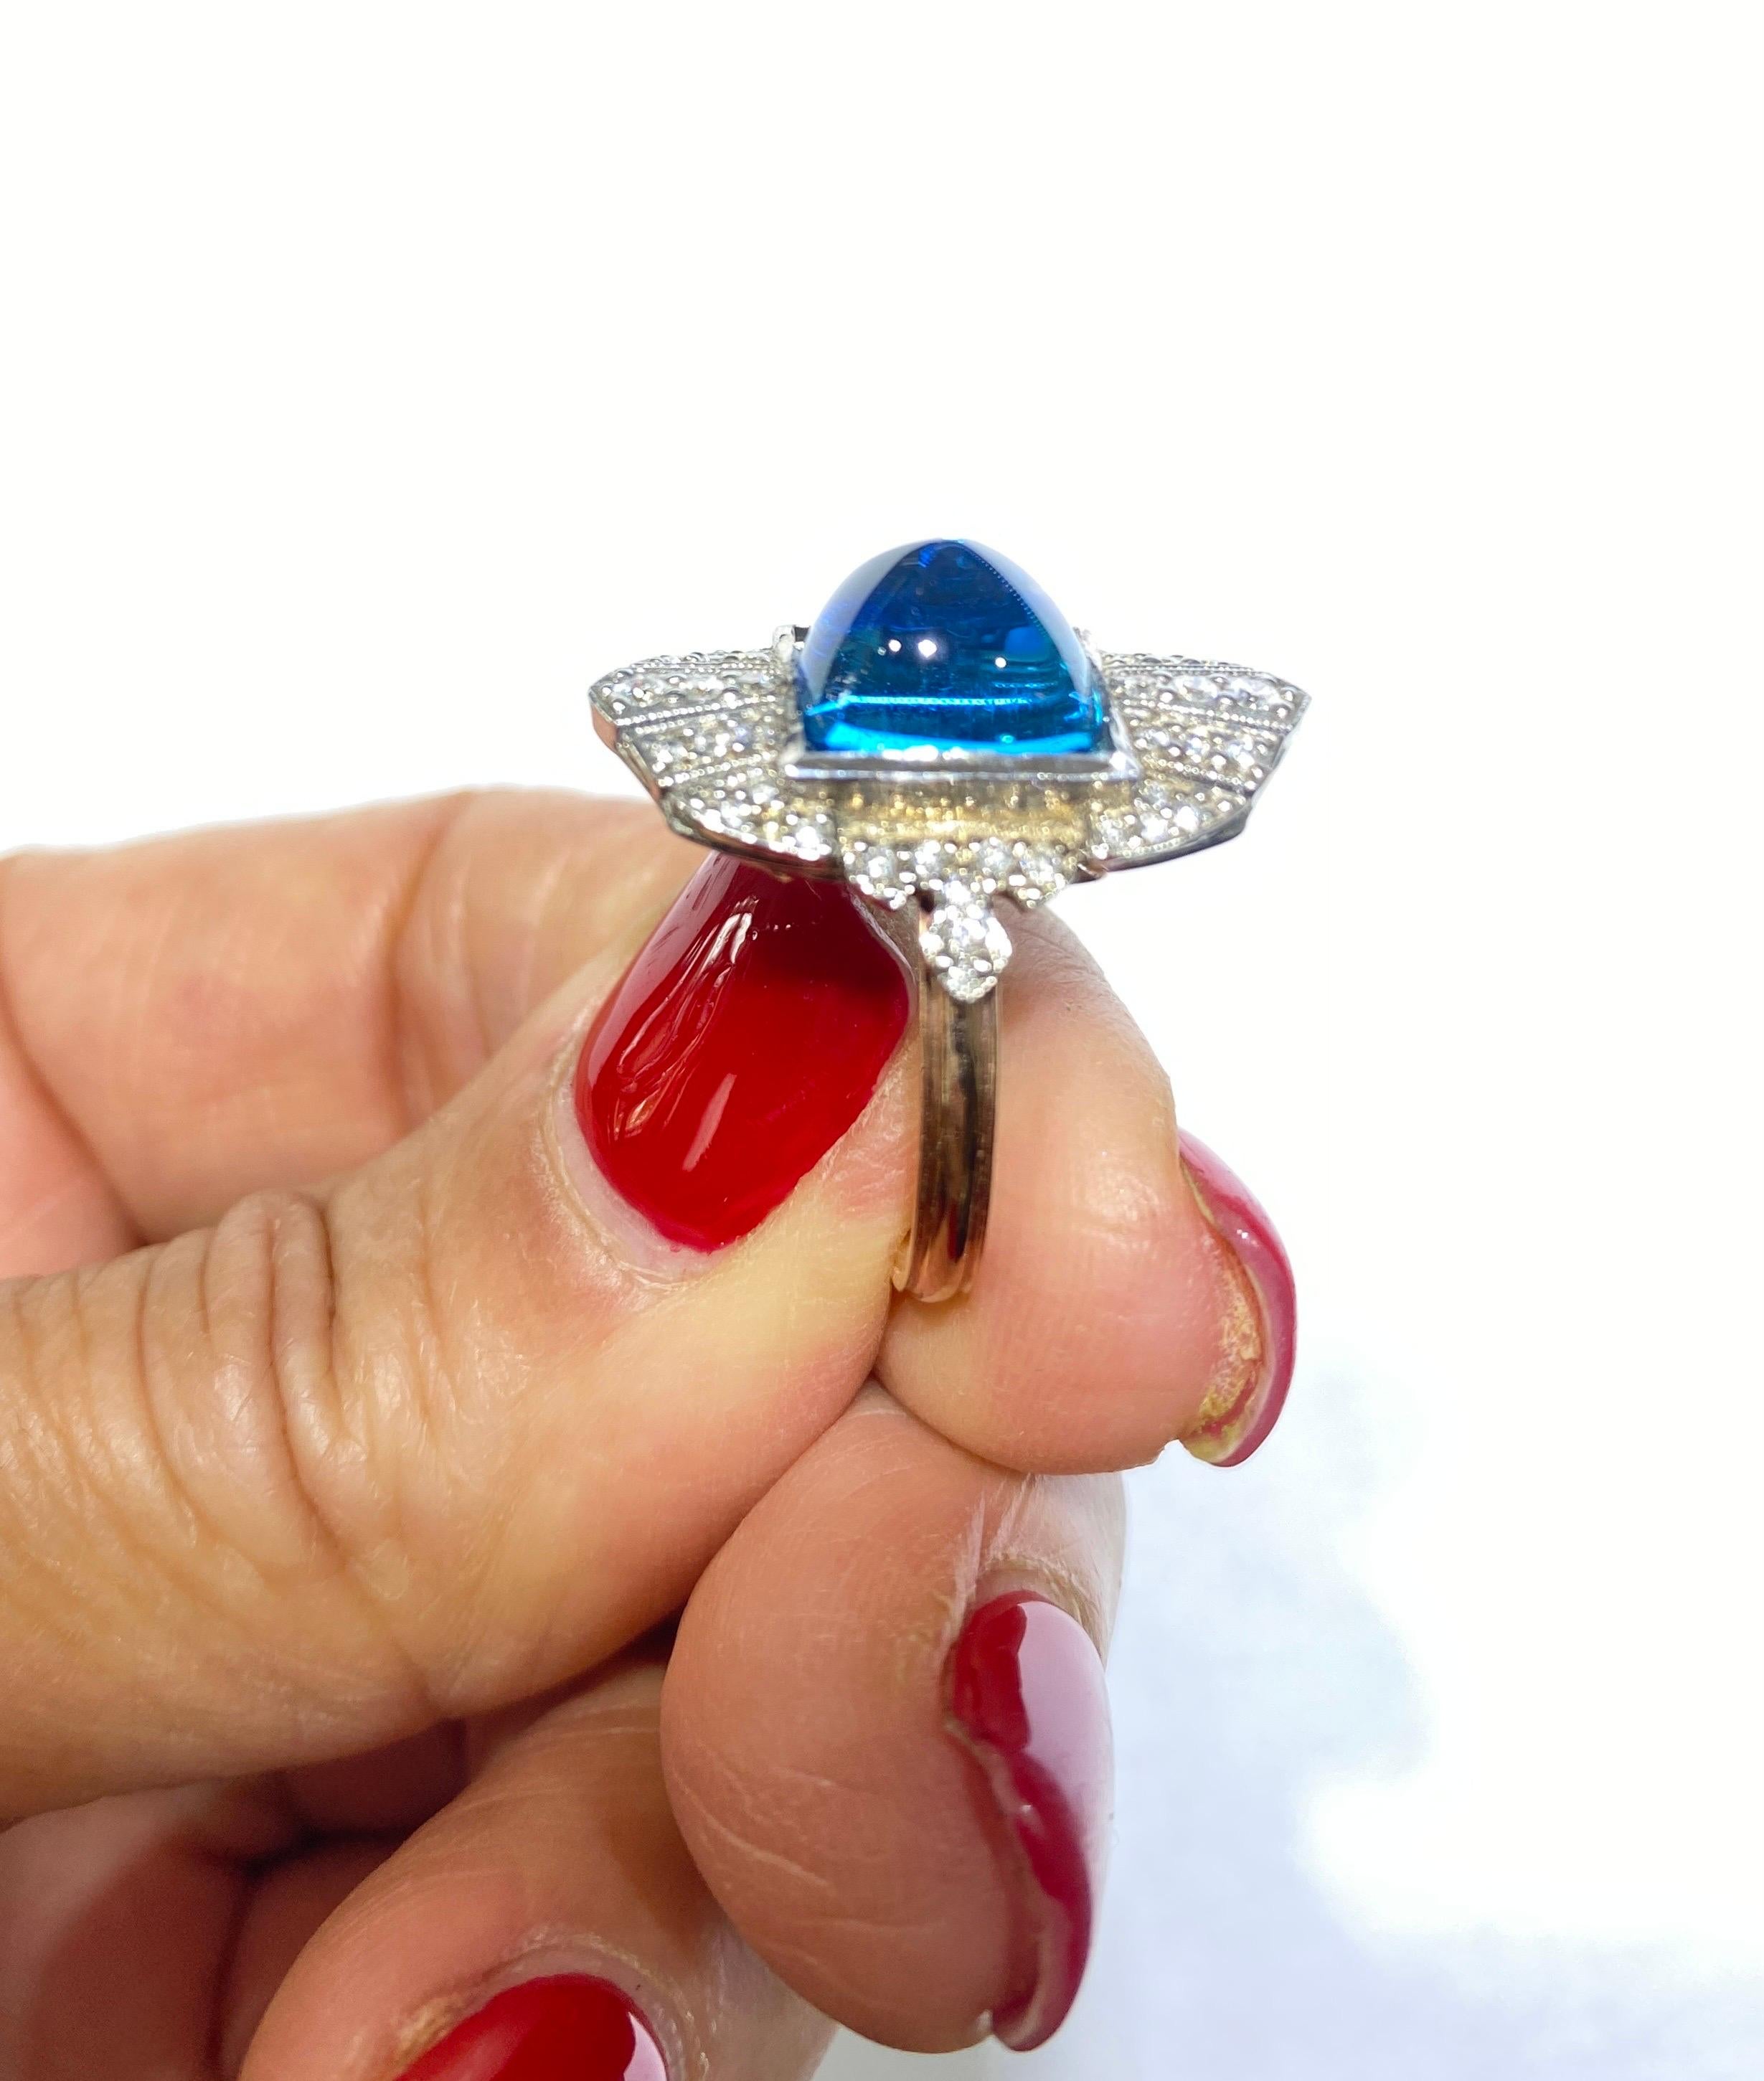 La pierre bleue de taille cabochon Sugarloaf est sertie dans un bouclier de diamants pavés. Jolie bague avec un grand style victorien et un design de galerie ouverte en dessous. Les diamants entourent les anneaux et sont sertis en pavé. Le poids